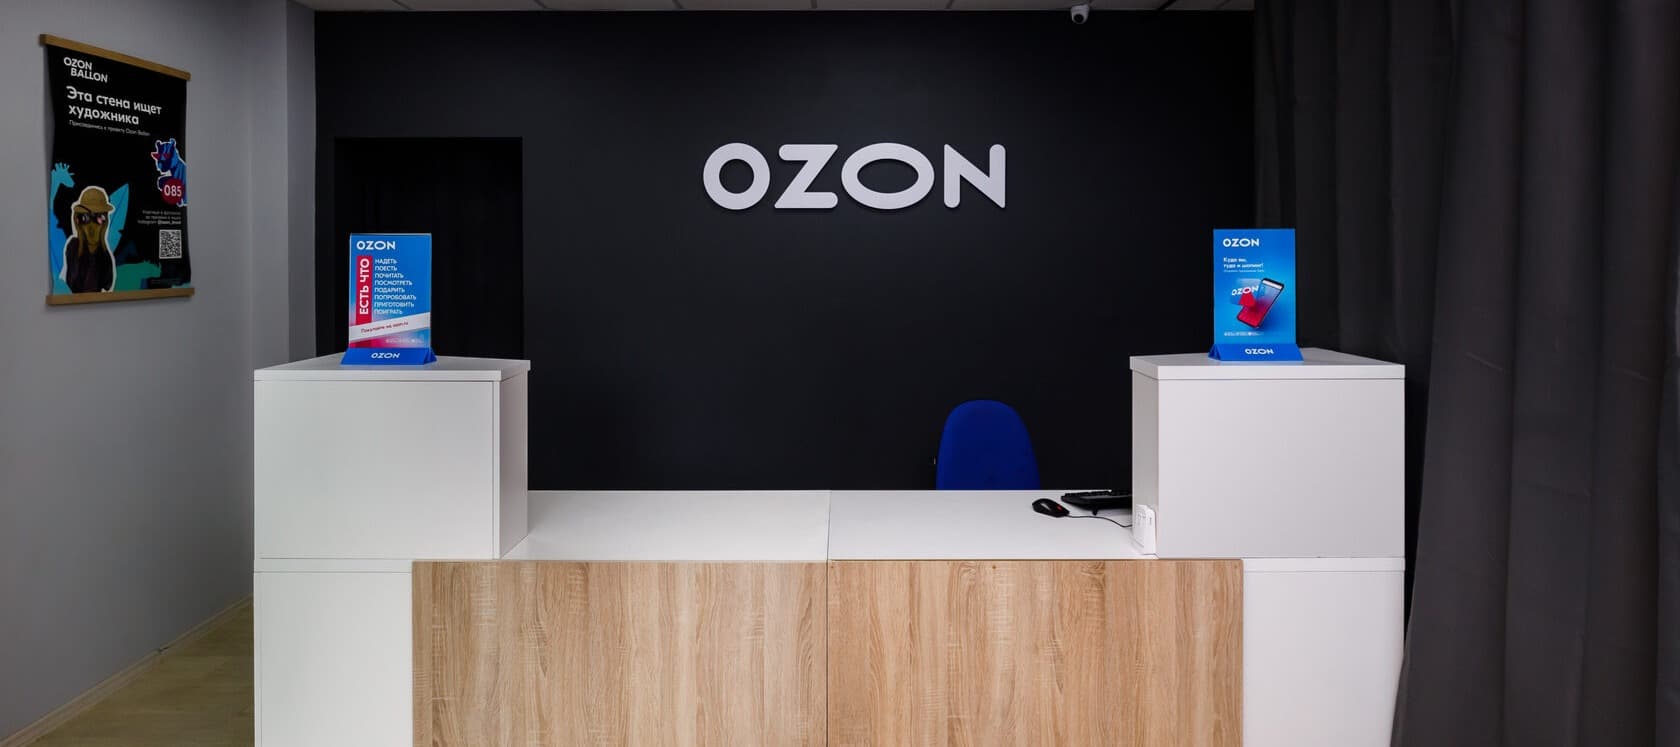 Фото новости: "Сервисный сбор с пунктов выдачи заказов Ozon лишит предпринимателей до 40% дохода"